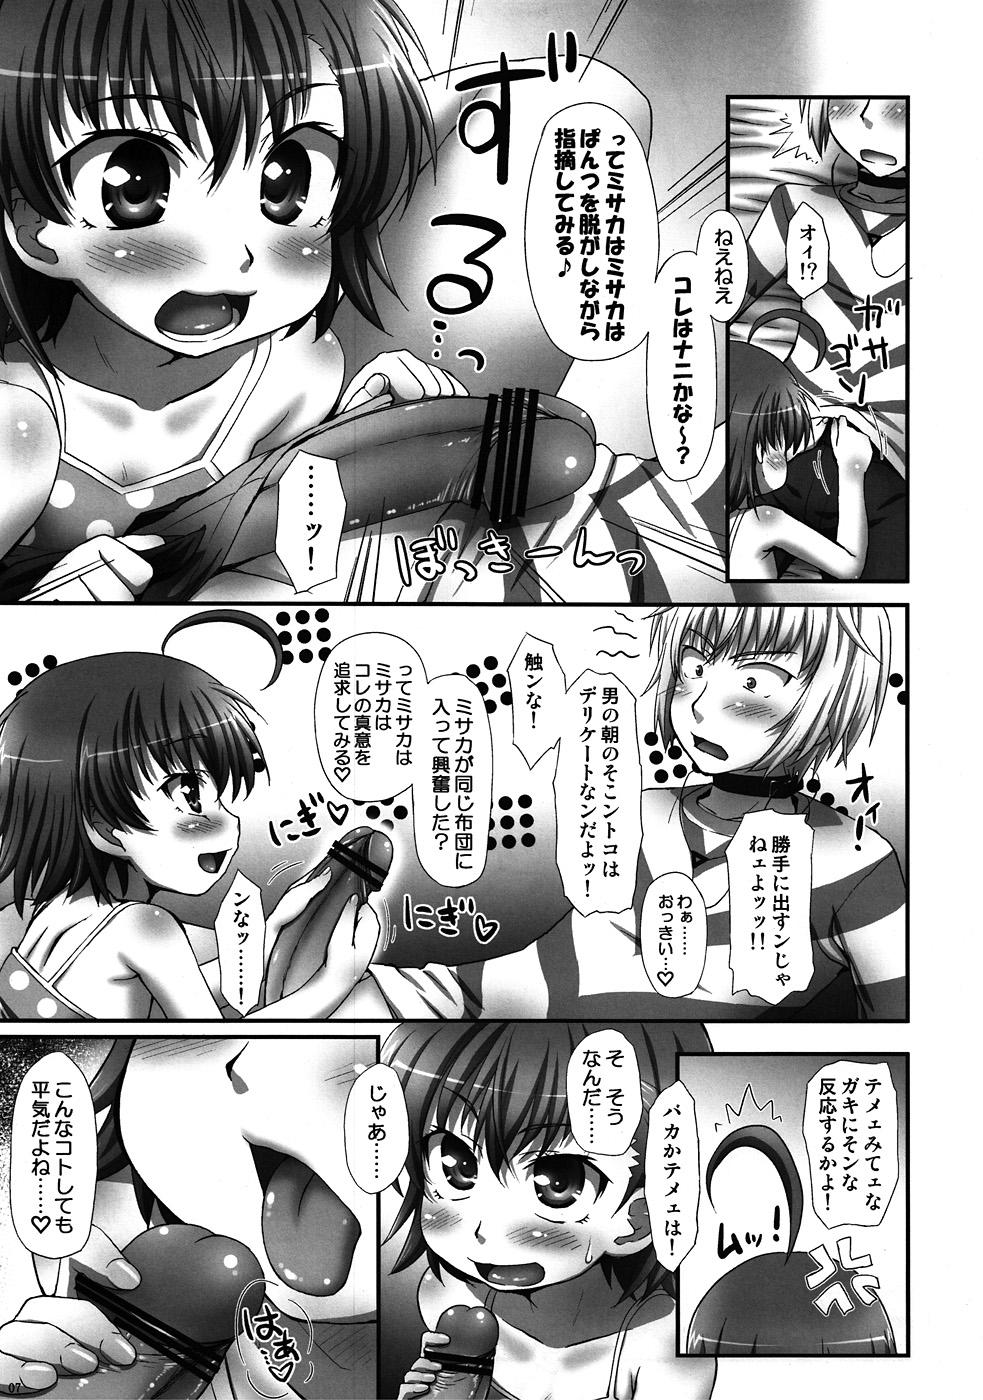 Cruising Misaka wa Misaka wa Misaka Hon. - Toaru majutsu no index Tetas Grandes - Page 6